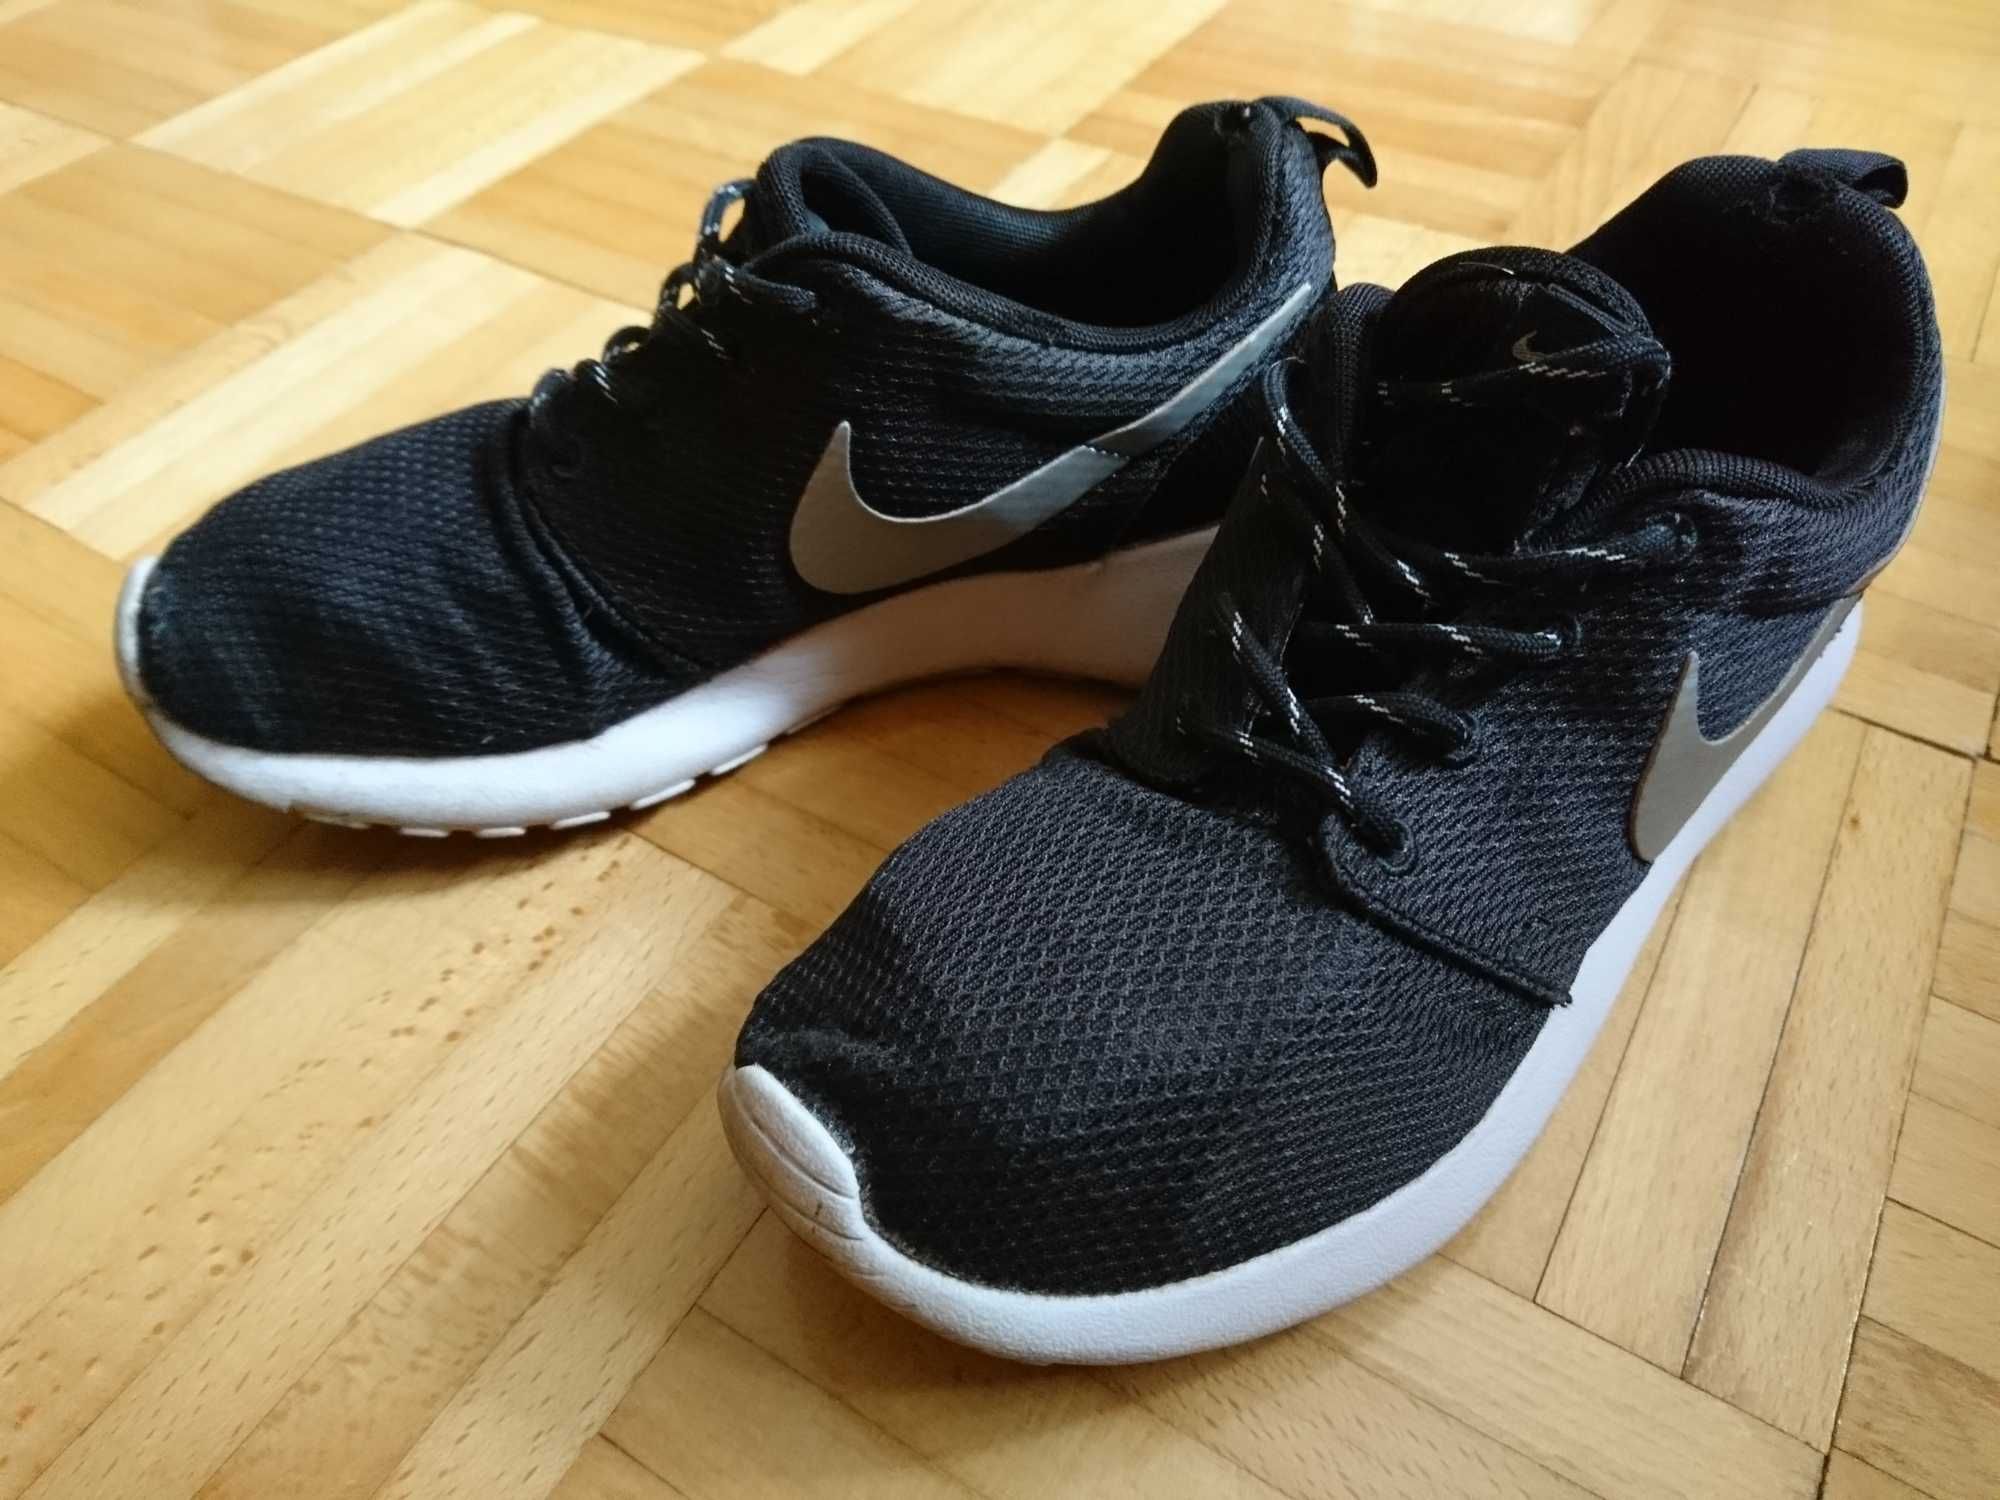 Buty damskie sportowe Nike, czarne. Rozmiar 38 - 24cm